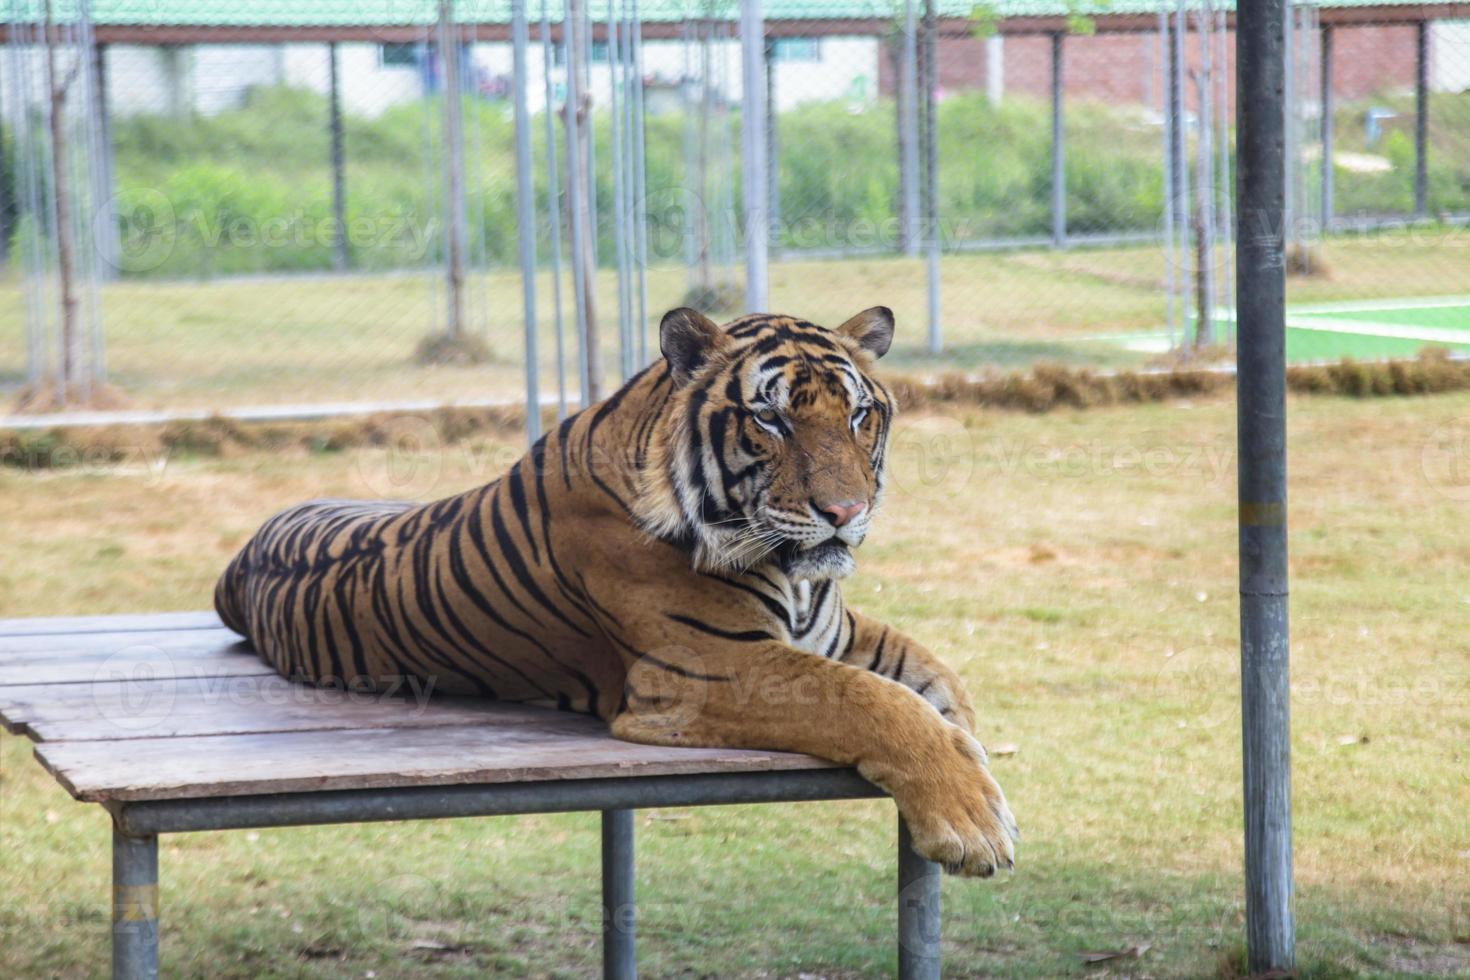 tiger i zoo foto